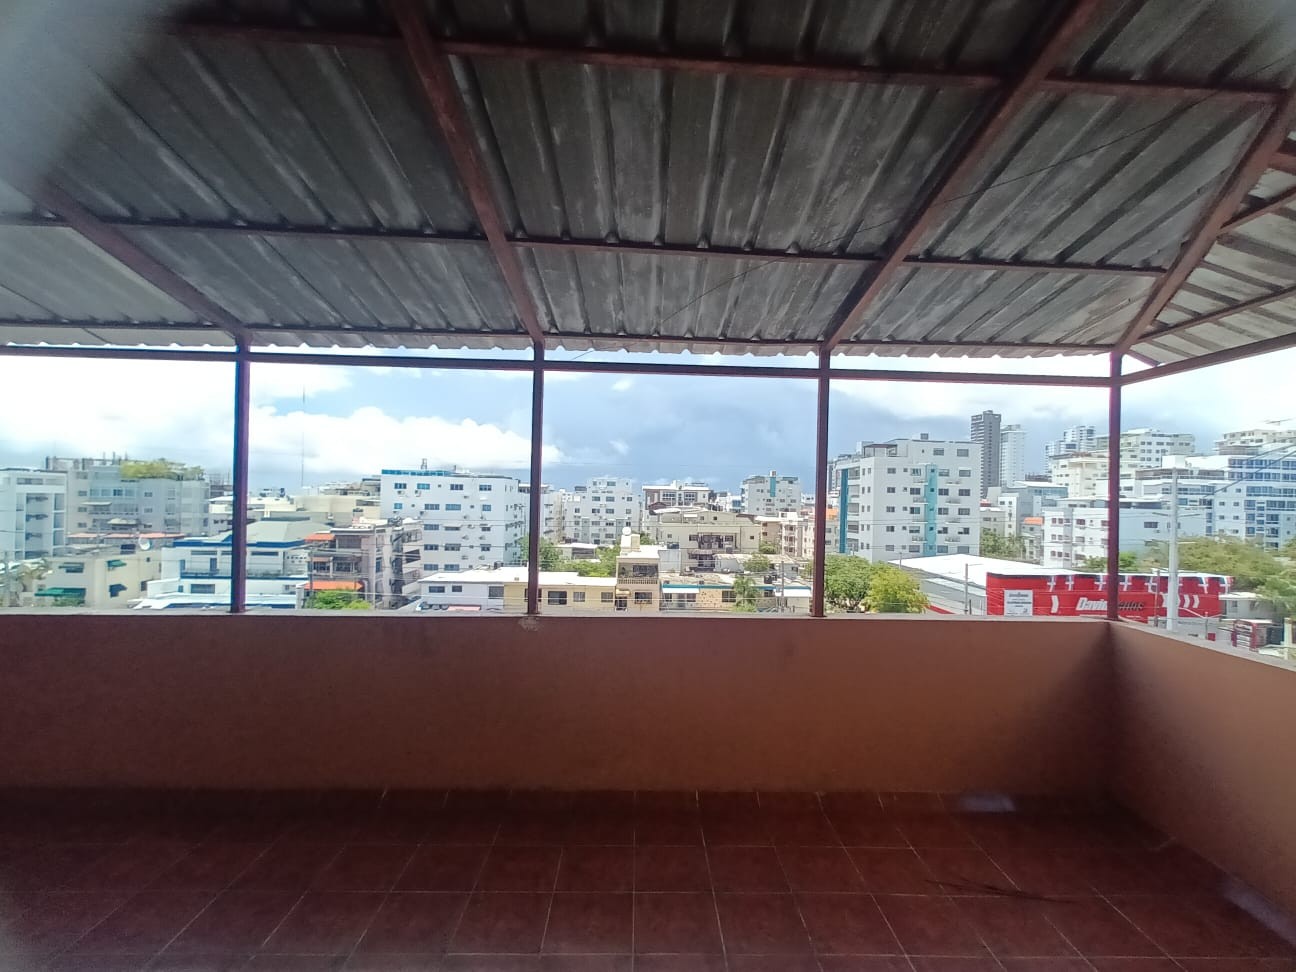 apartamentos - Residencial Kiara Mariel IV en Mirador Norte.

190 mts2.

APARTAMENTO 502 (5B),  6